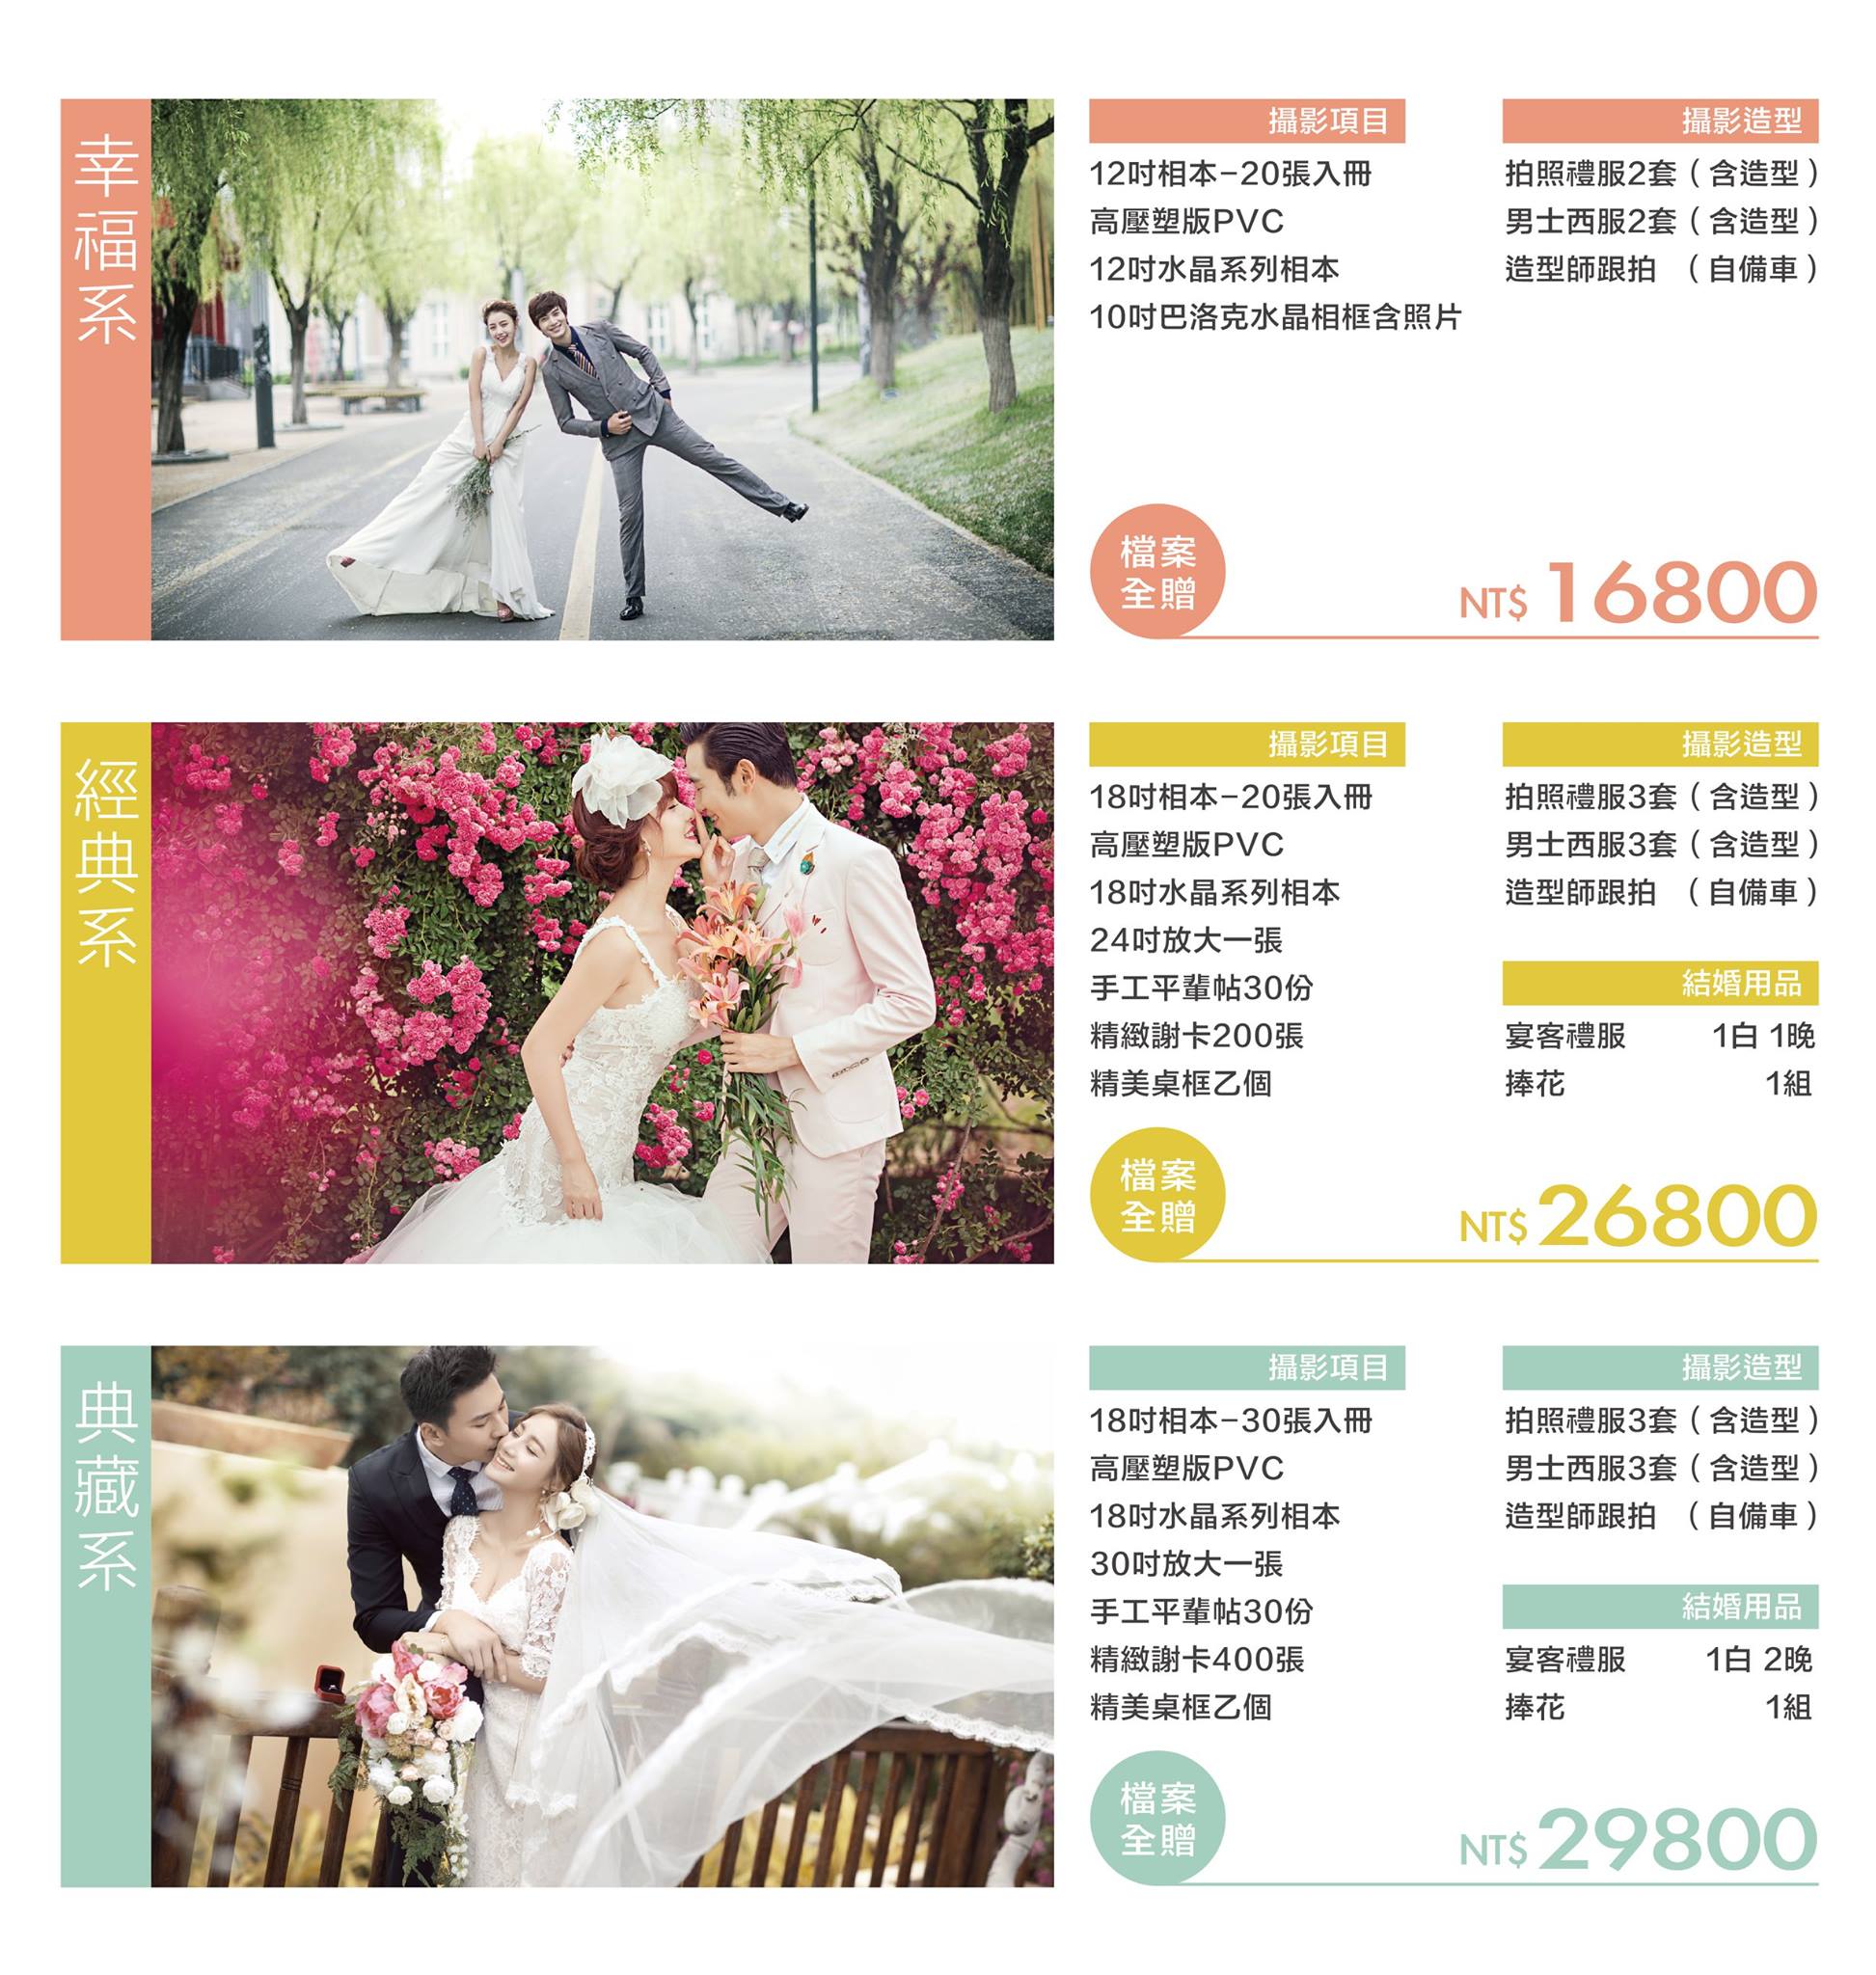 小禮堂結婚式 - 20170202154624-22517742.jpg(圖)